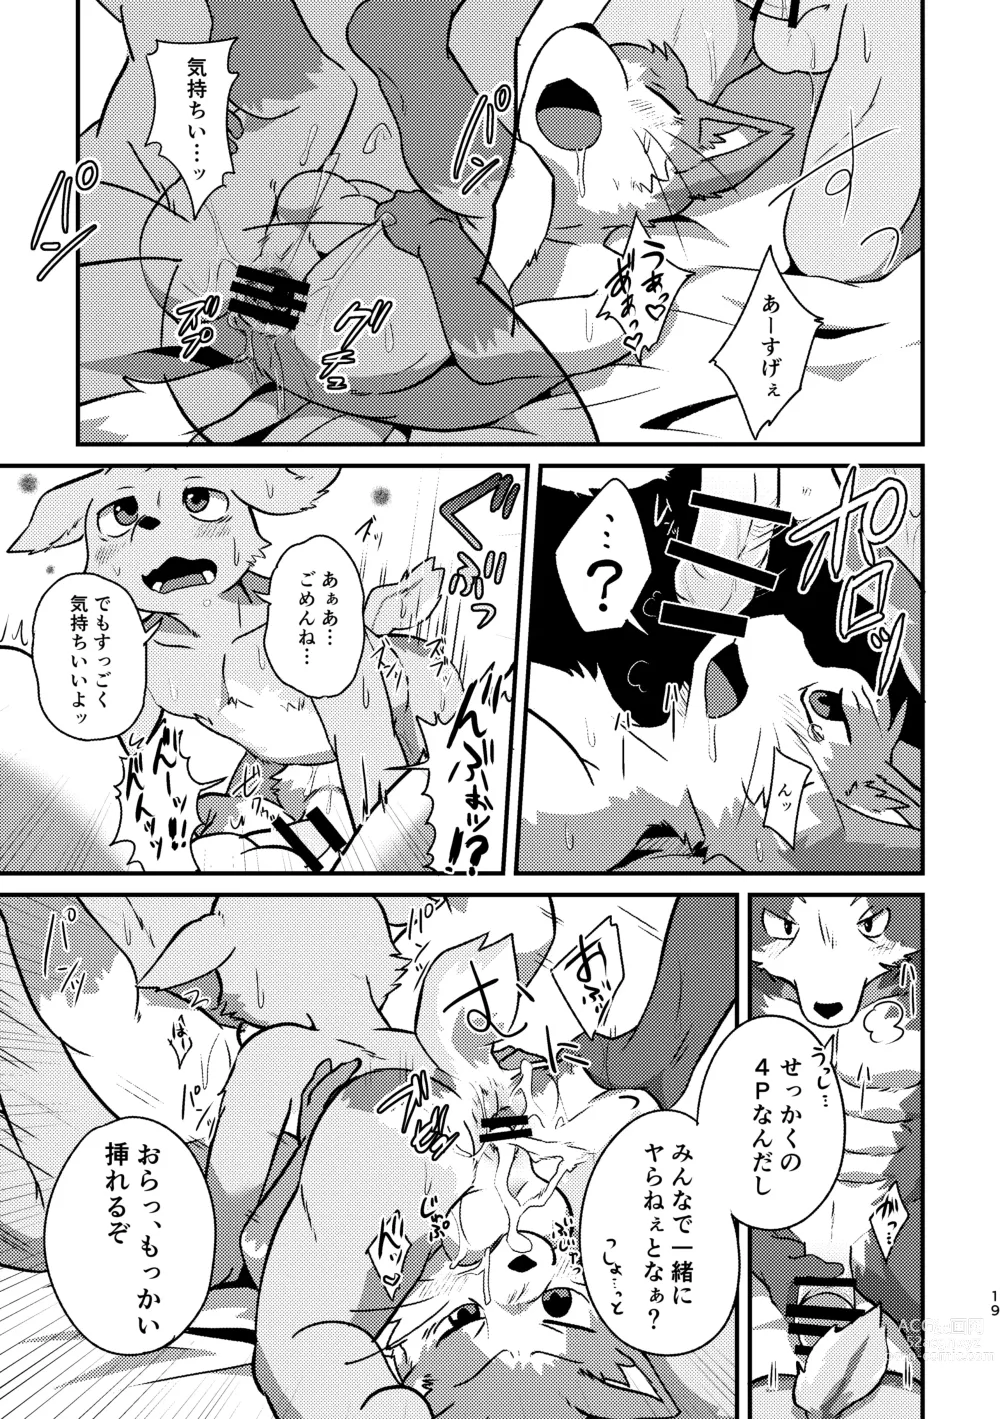 Page 43 of doujinshi Boku-Tachi Futari wa Neko shitai!